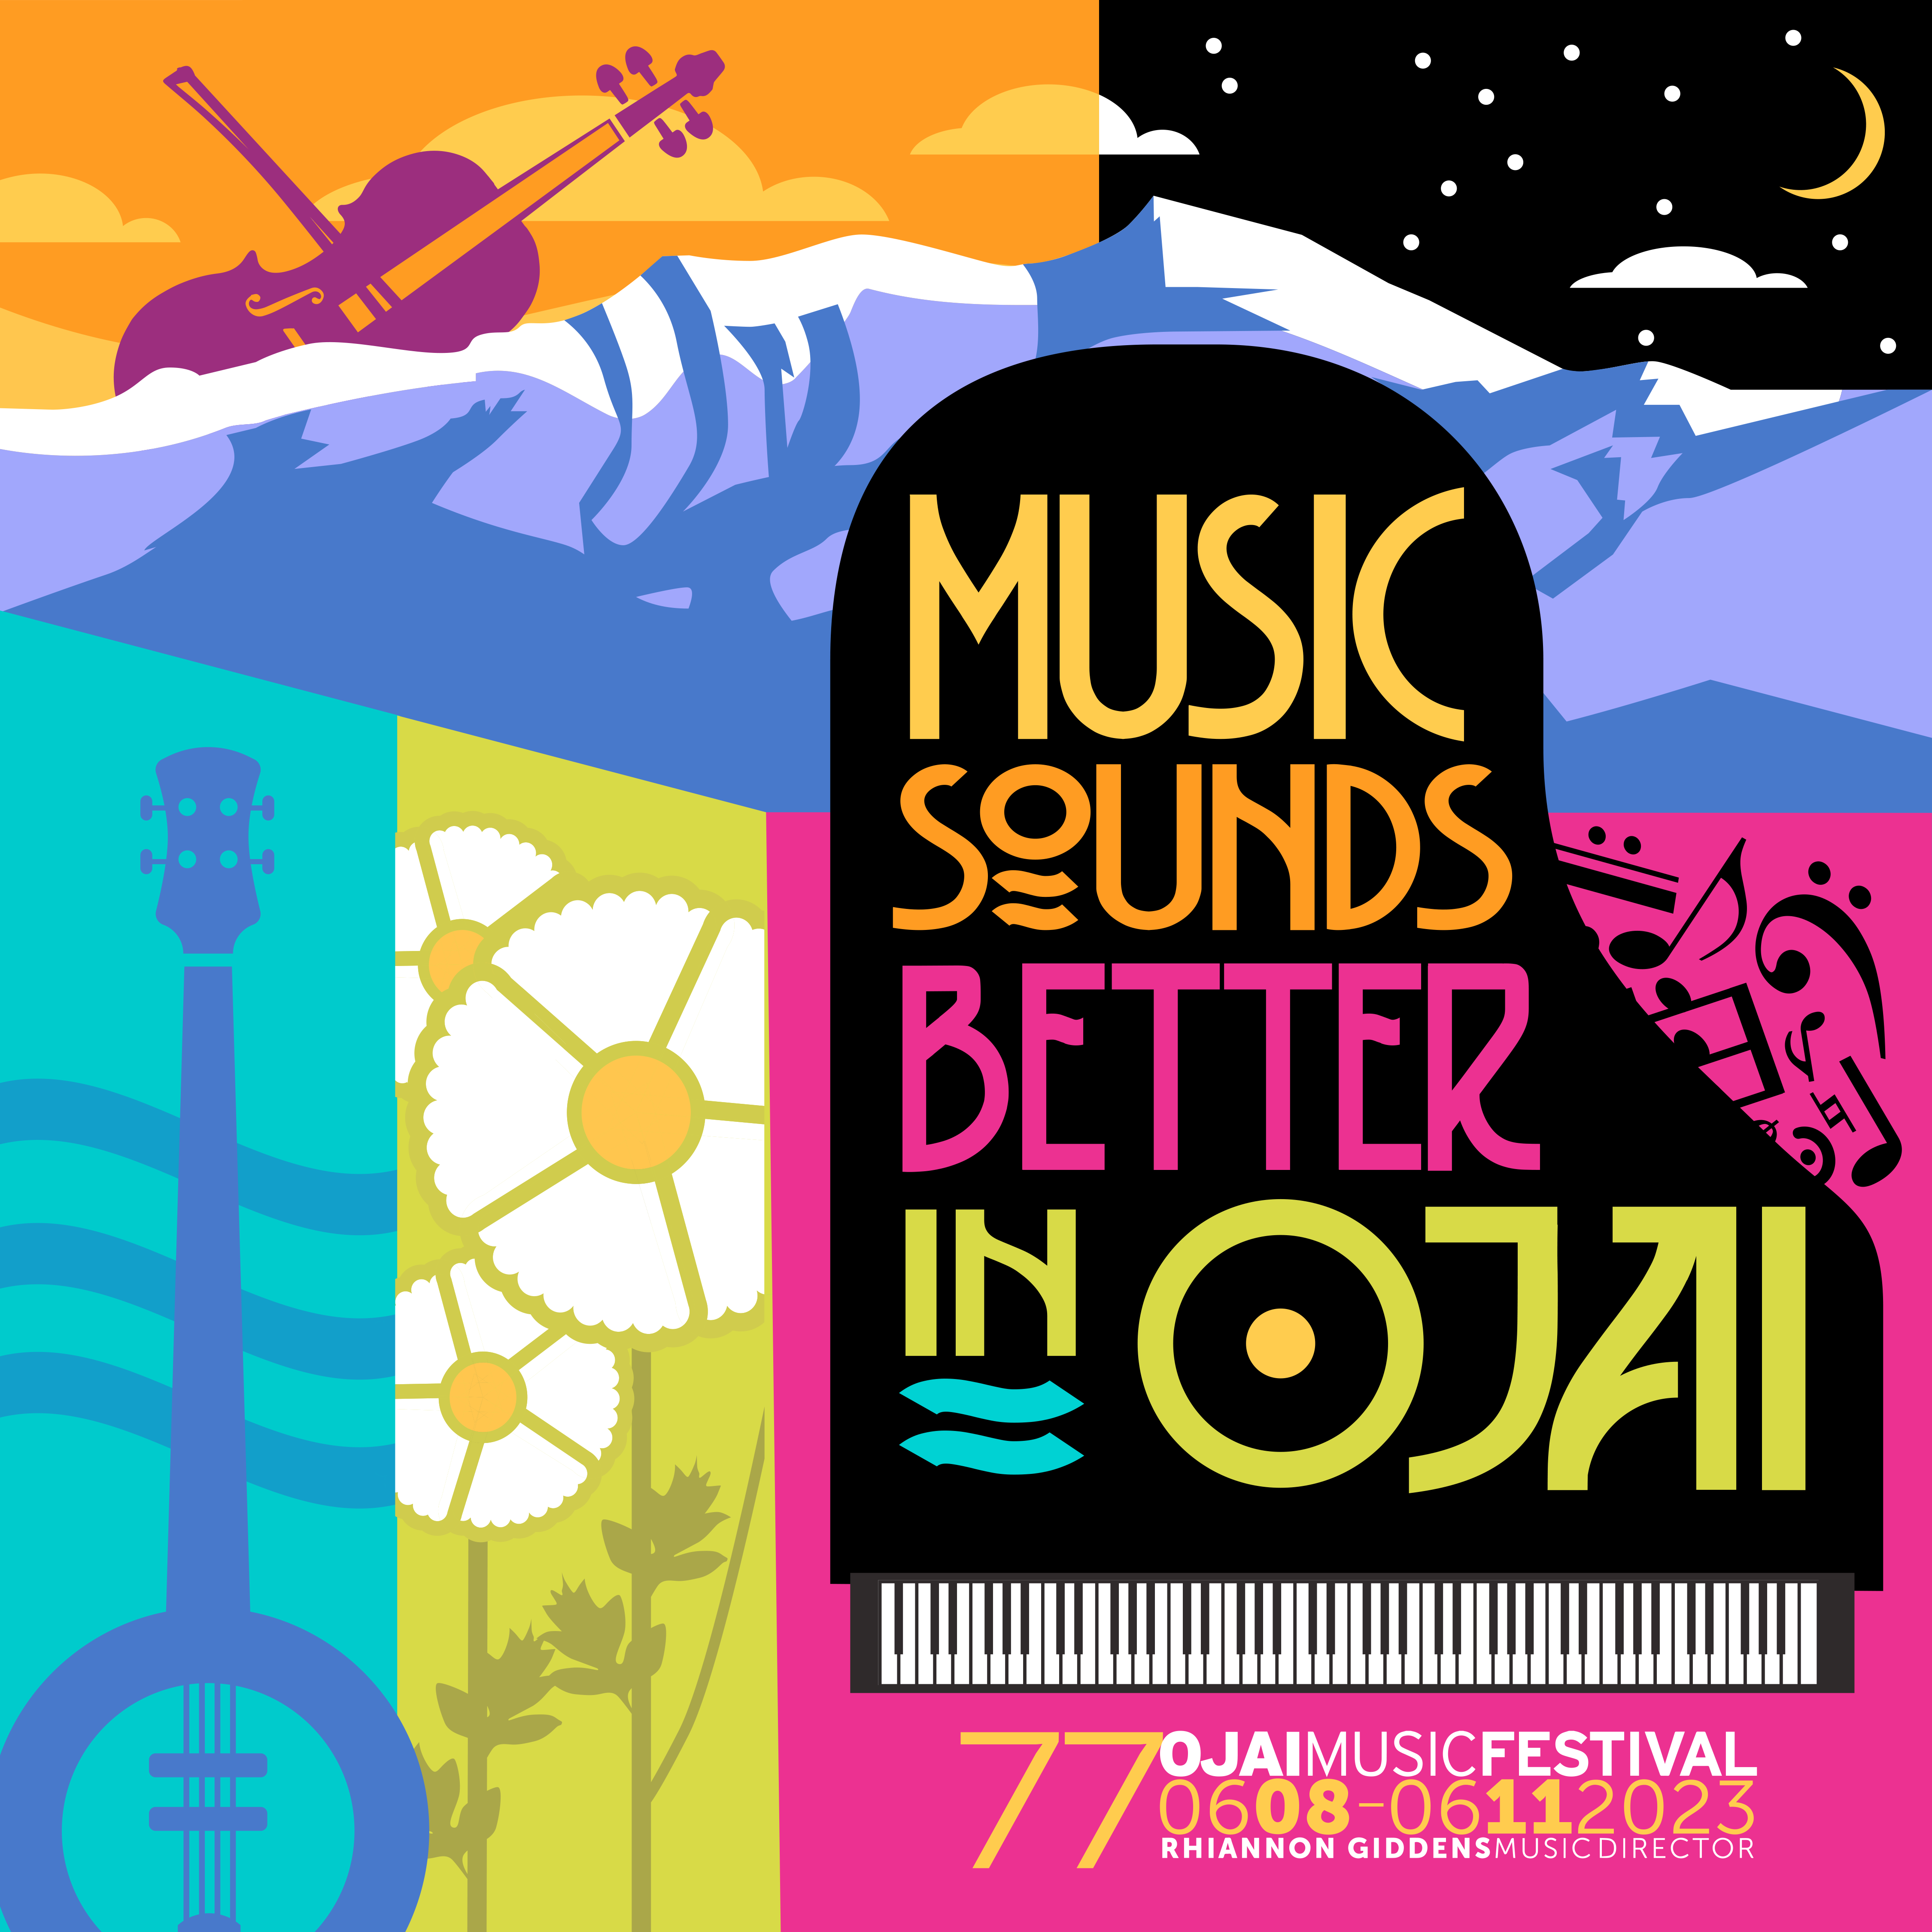 Music Sounds Better in Ojai Winner Announced! Ojai Music Festival